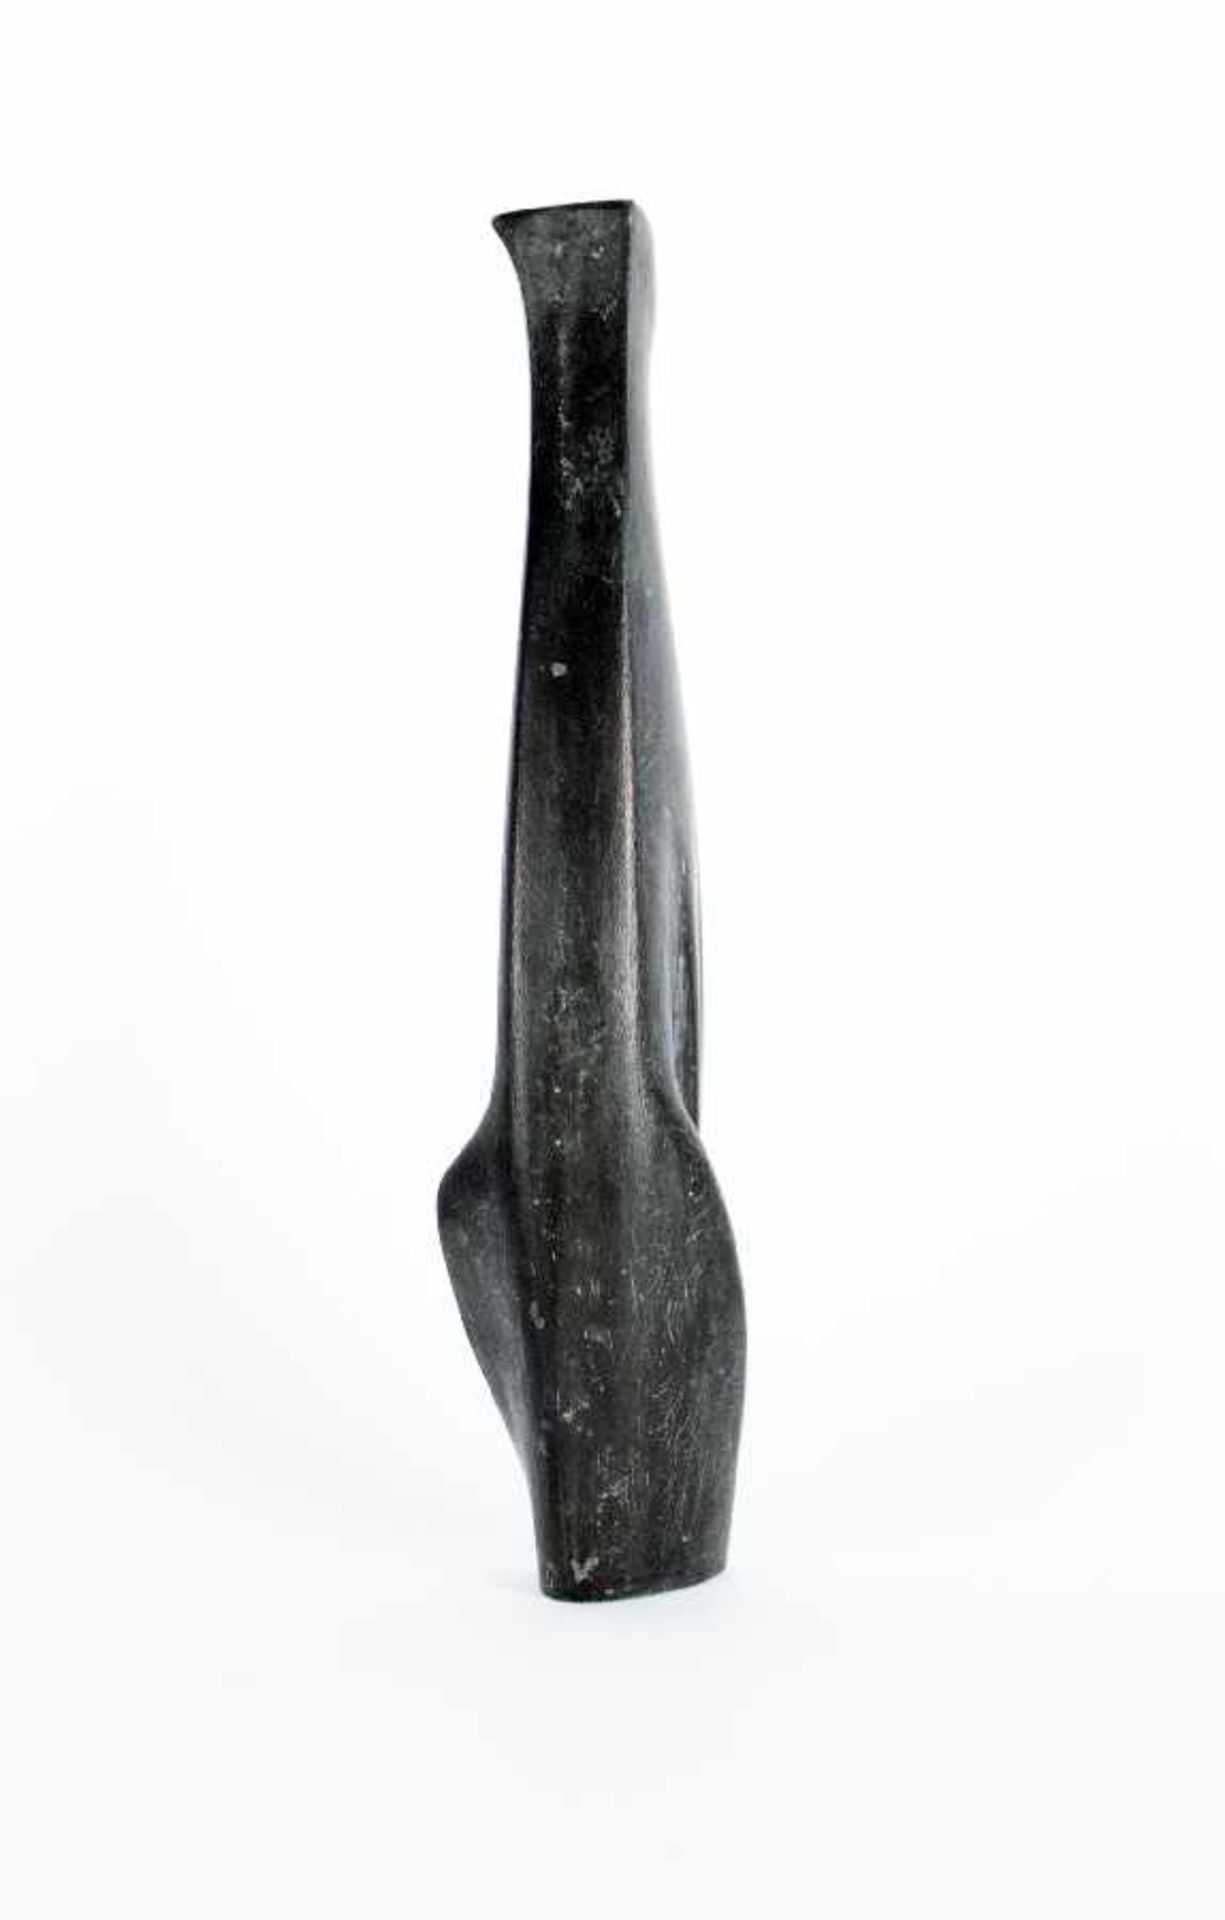 Bildhauer der Mitte des 20. Jh. Katze Weissmetall; H 29,5 cm; bezeichnet "HJ 4" Sculptor of the - Image 3 of 3